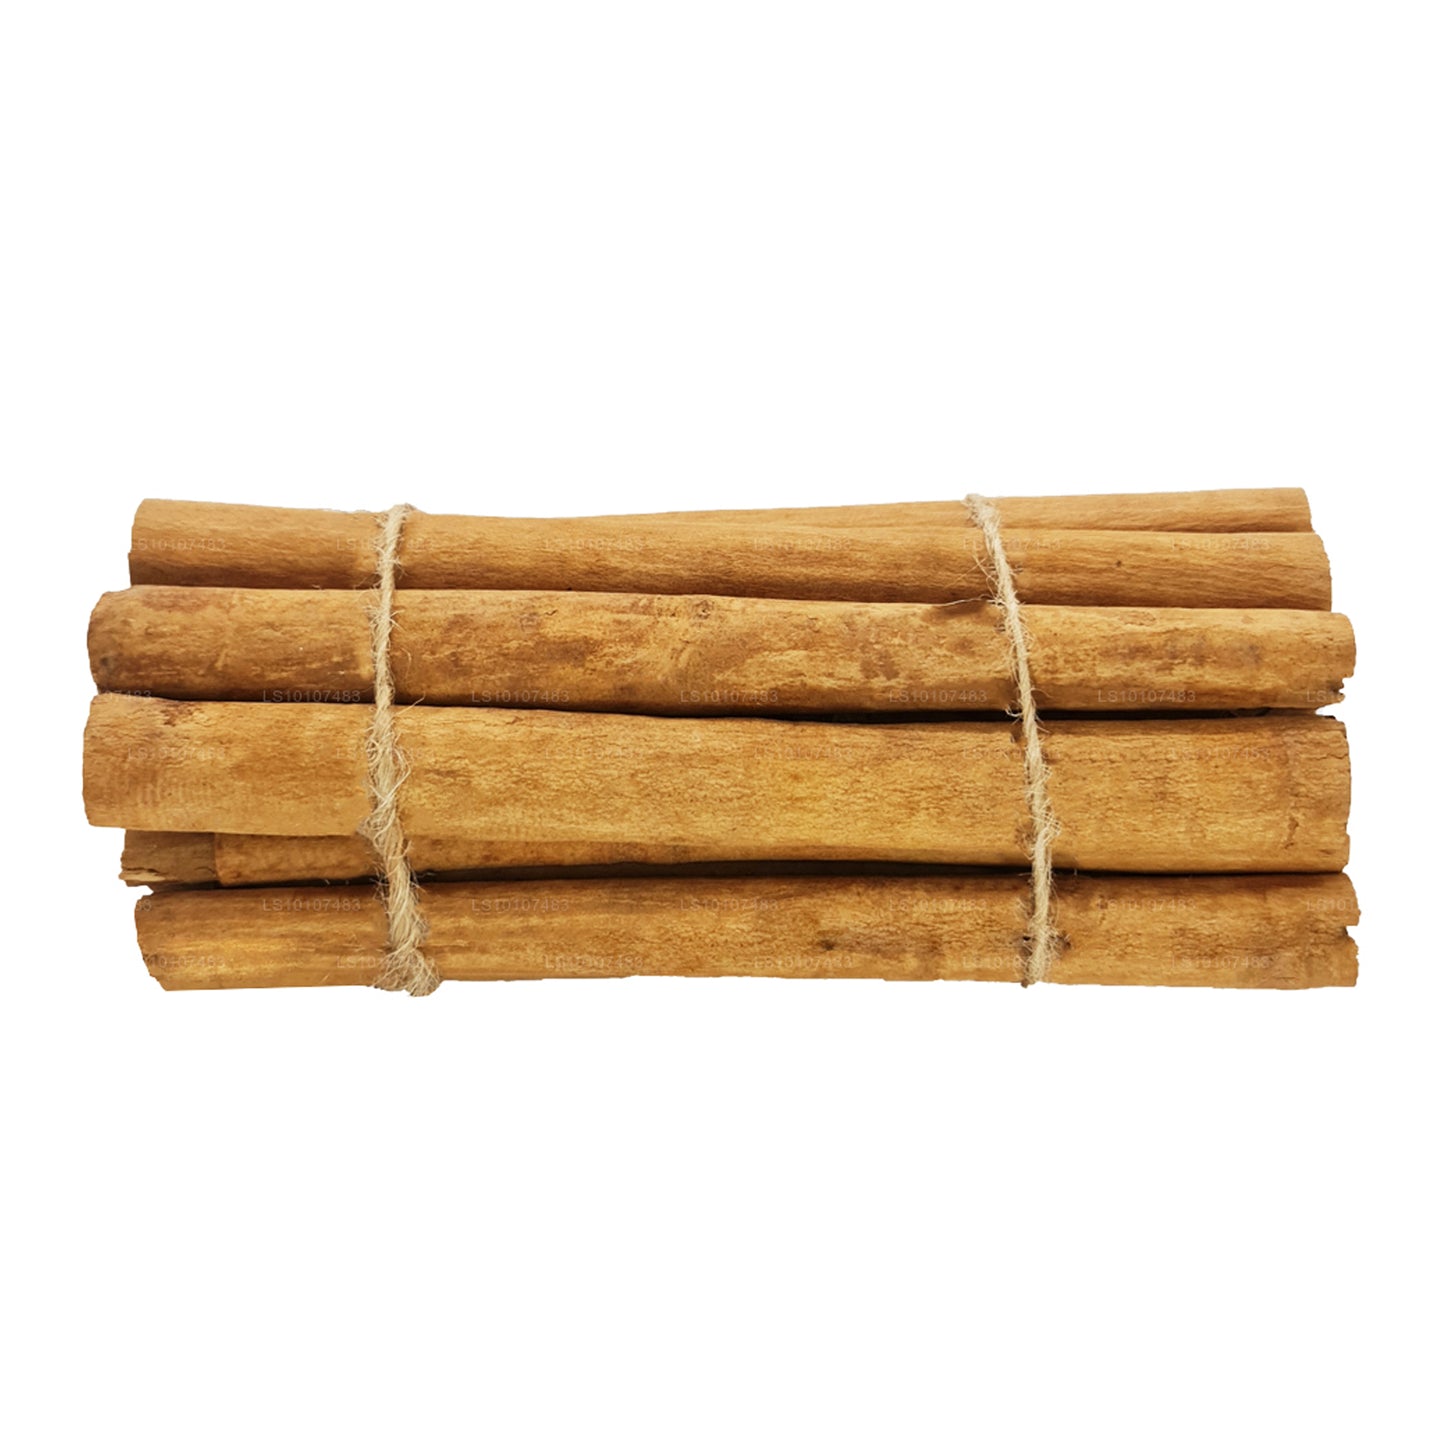 Lakpura ”C4" Grade Ceylon Sann Kanel Barks Pack